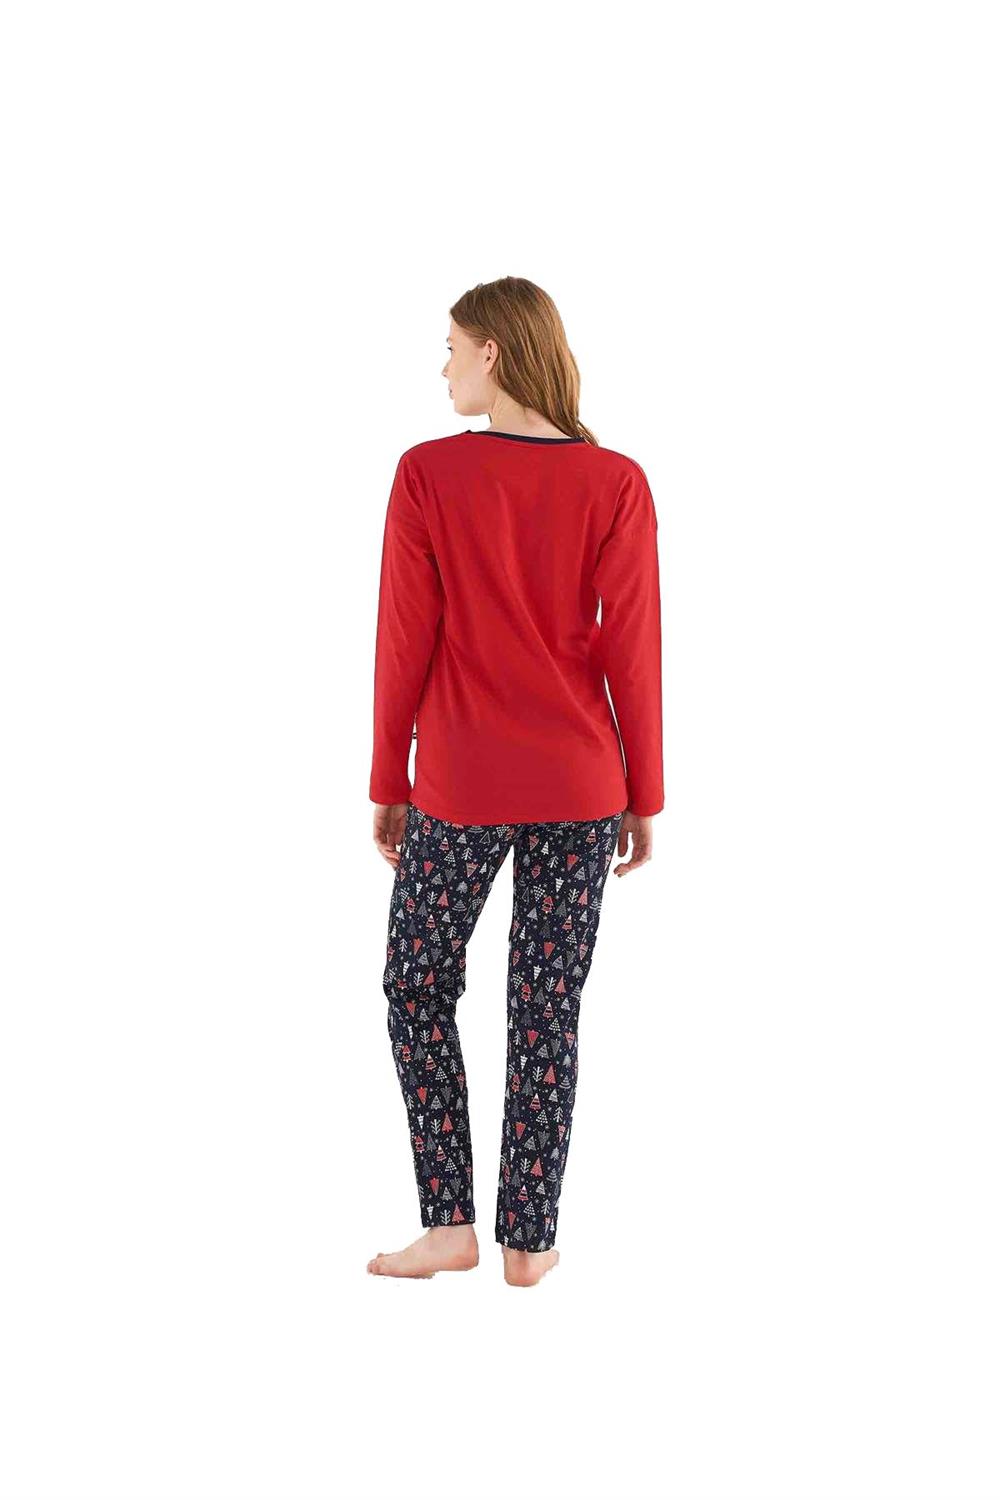 U.S. Polo Assn Kadın Uzun Kollu Kırmızı Pijama Takımı 16826